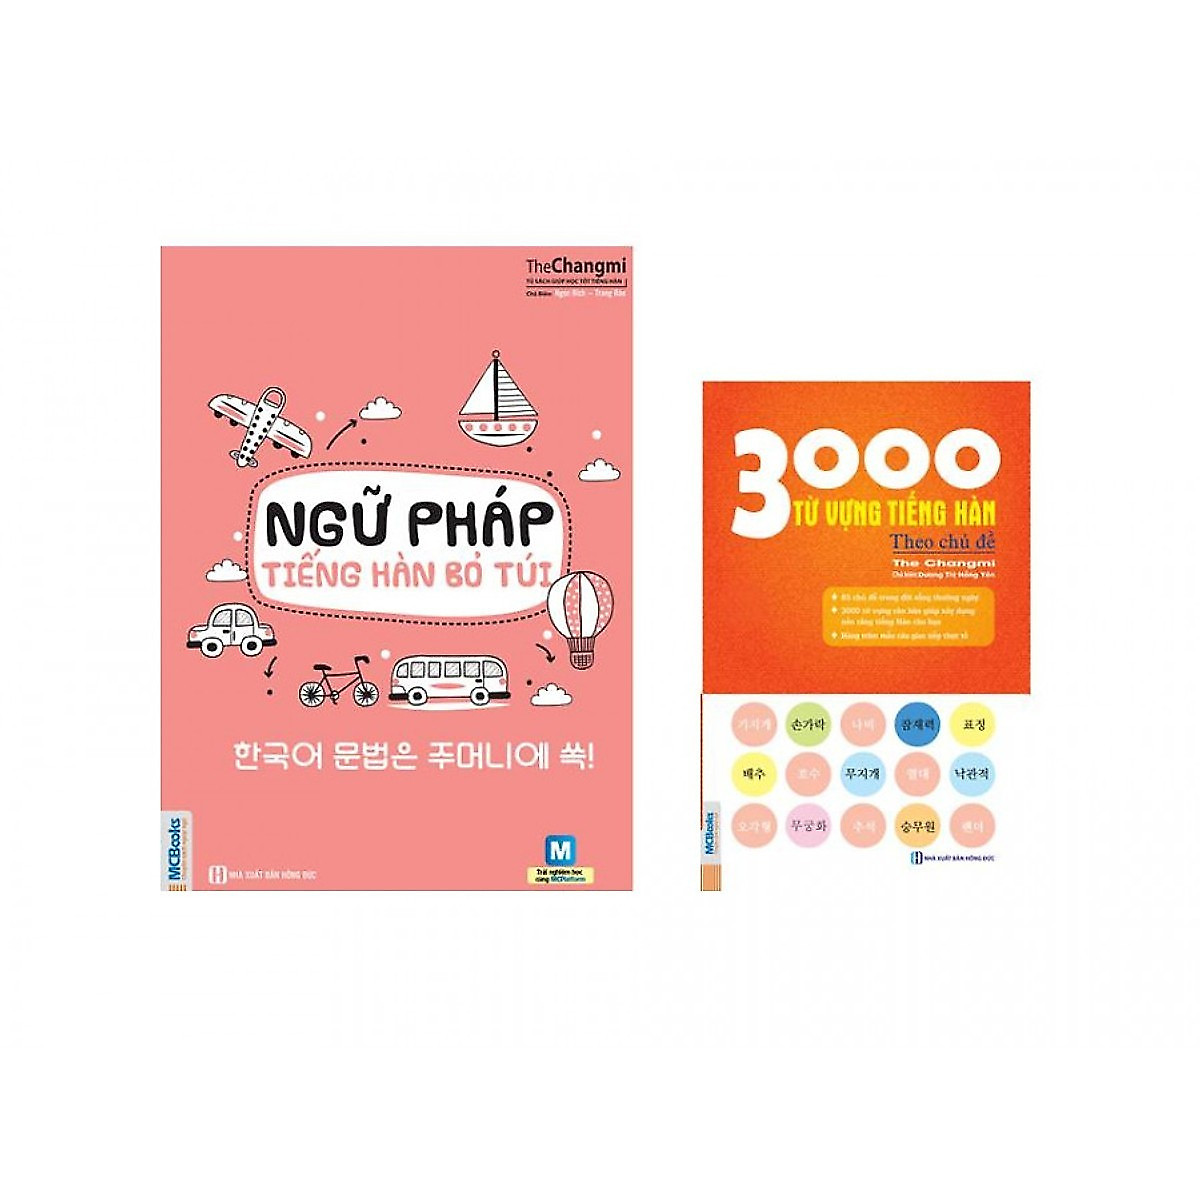 Combo Sách Tiếng Hàn Bỏ Túi ( Ngữ Pháp Tiếng Hàn Bỏ Túi + 3000 Từ Vựng Tiếng Hàn Theo Chủ Đề ) tặng kèm bookmark